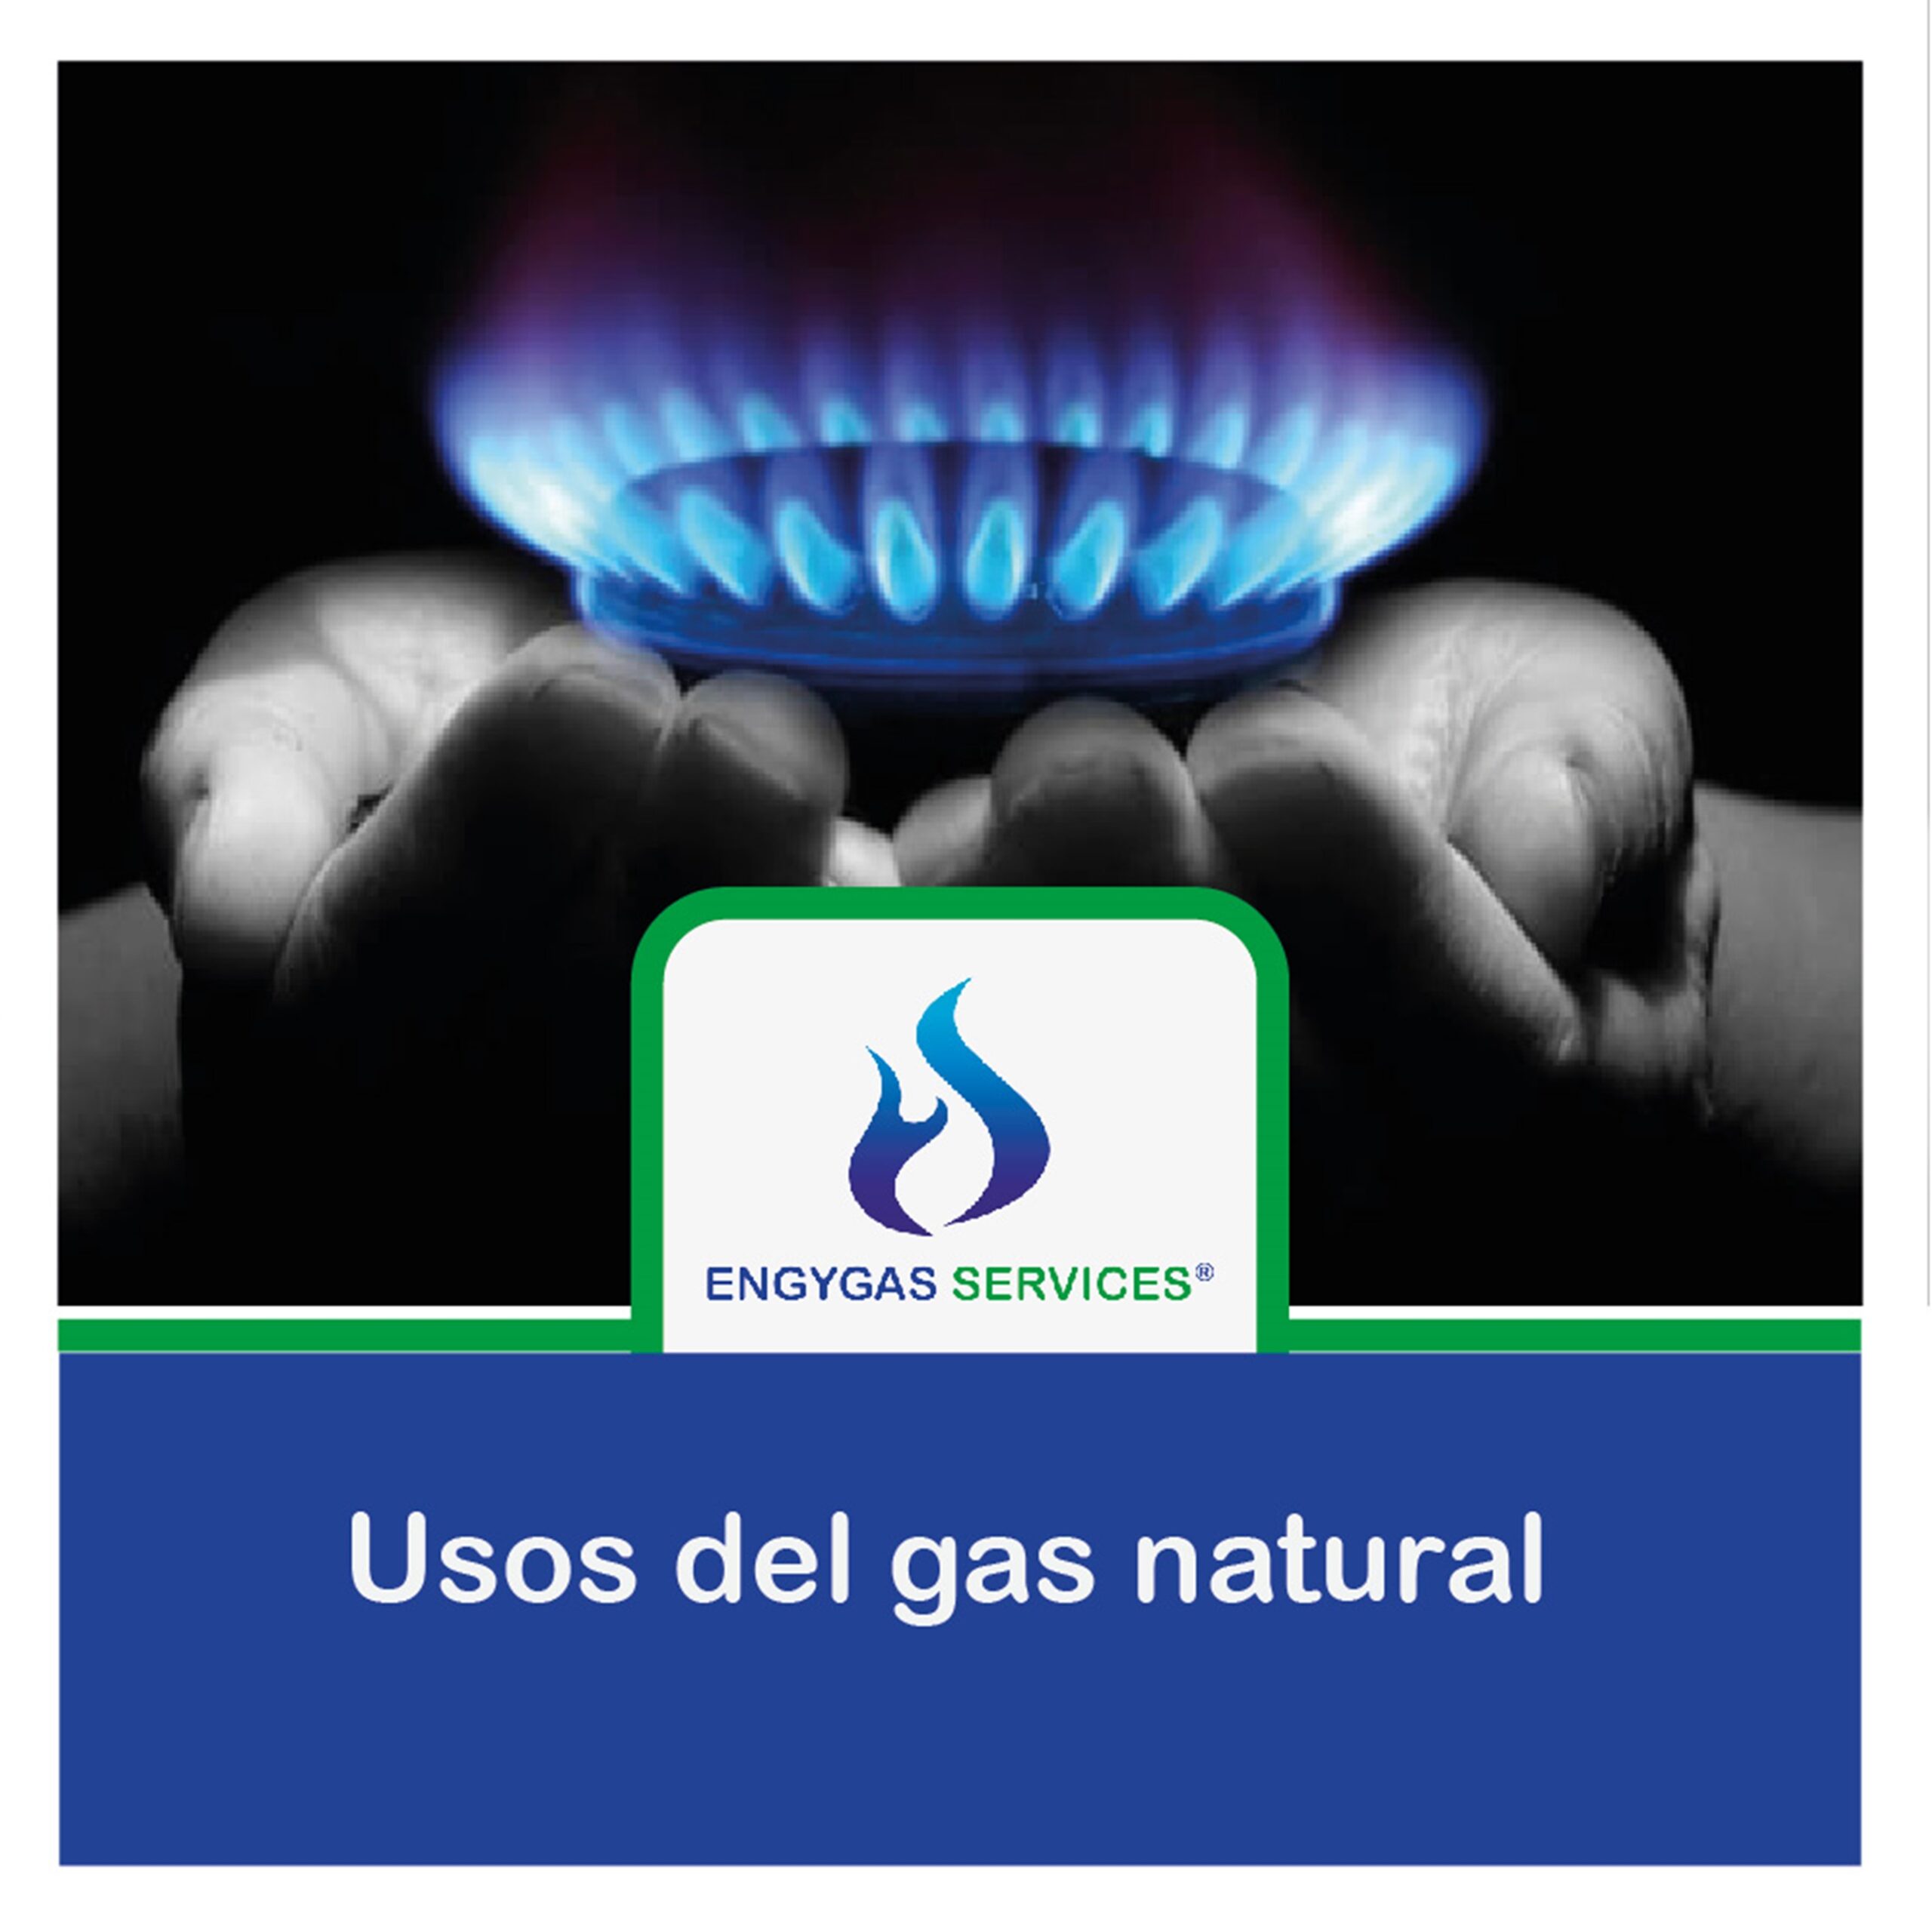 Usos del gas natural